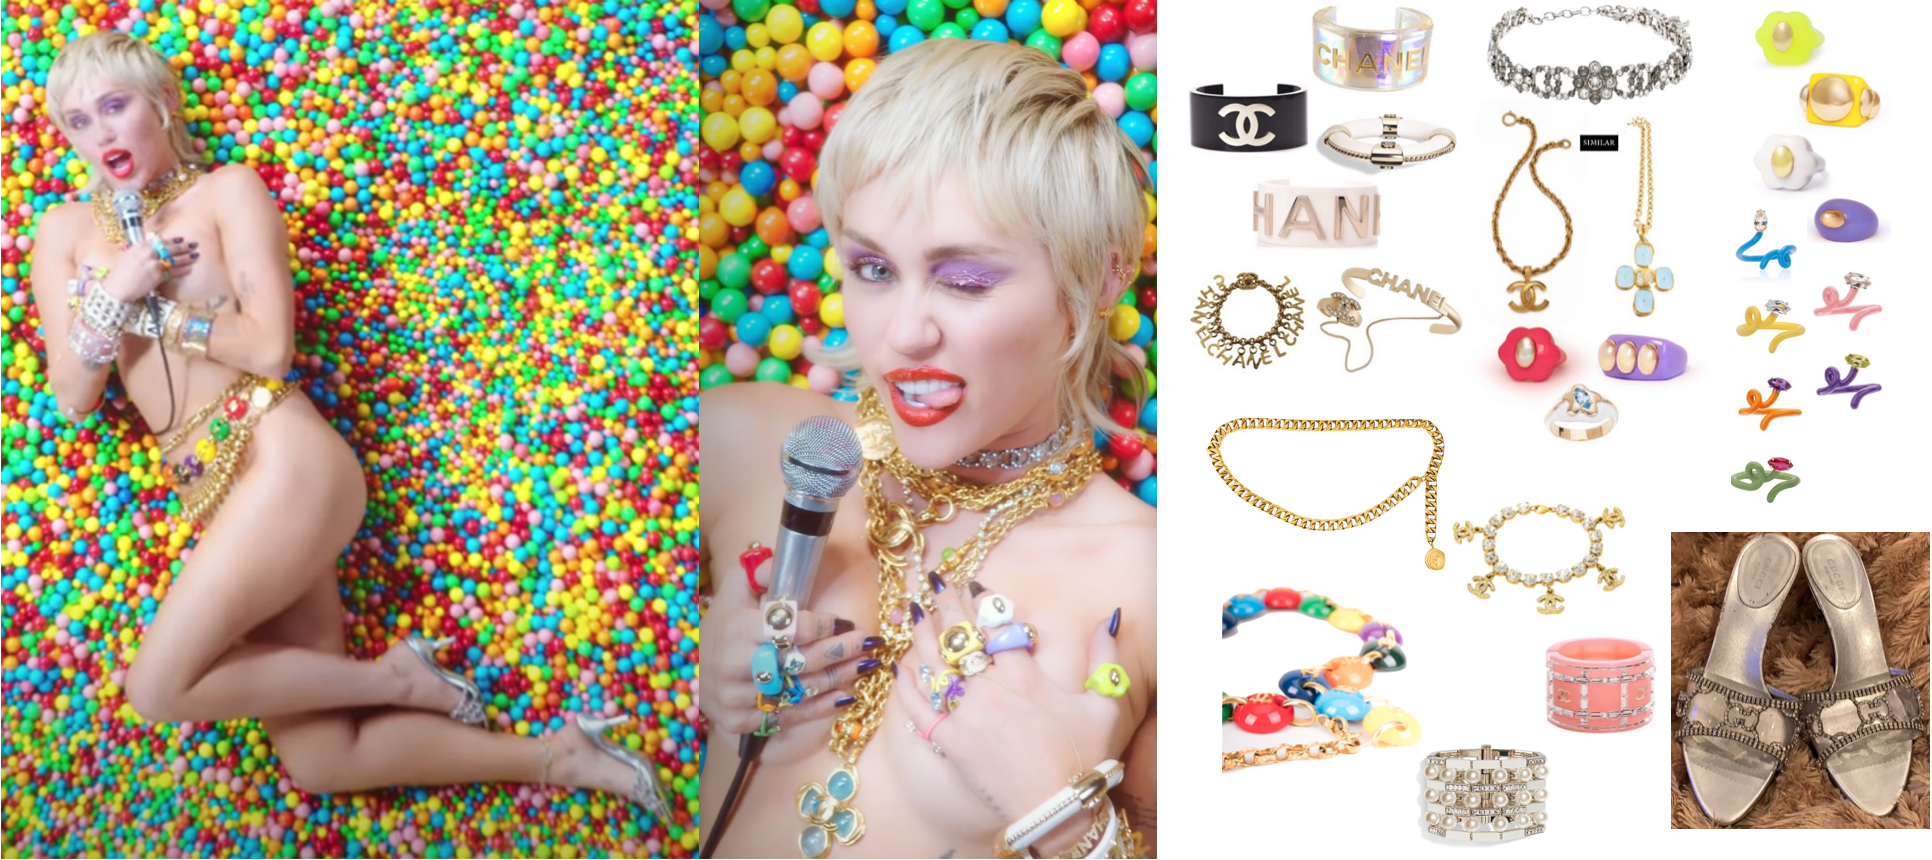 แฟชั่นลุคจาก Midnight Sky ของ Miley Cyrus - Jewelry